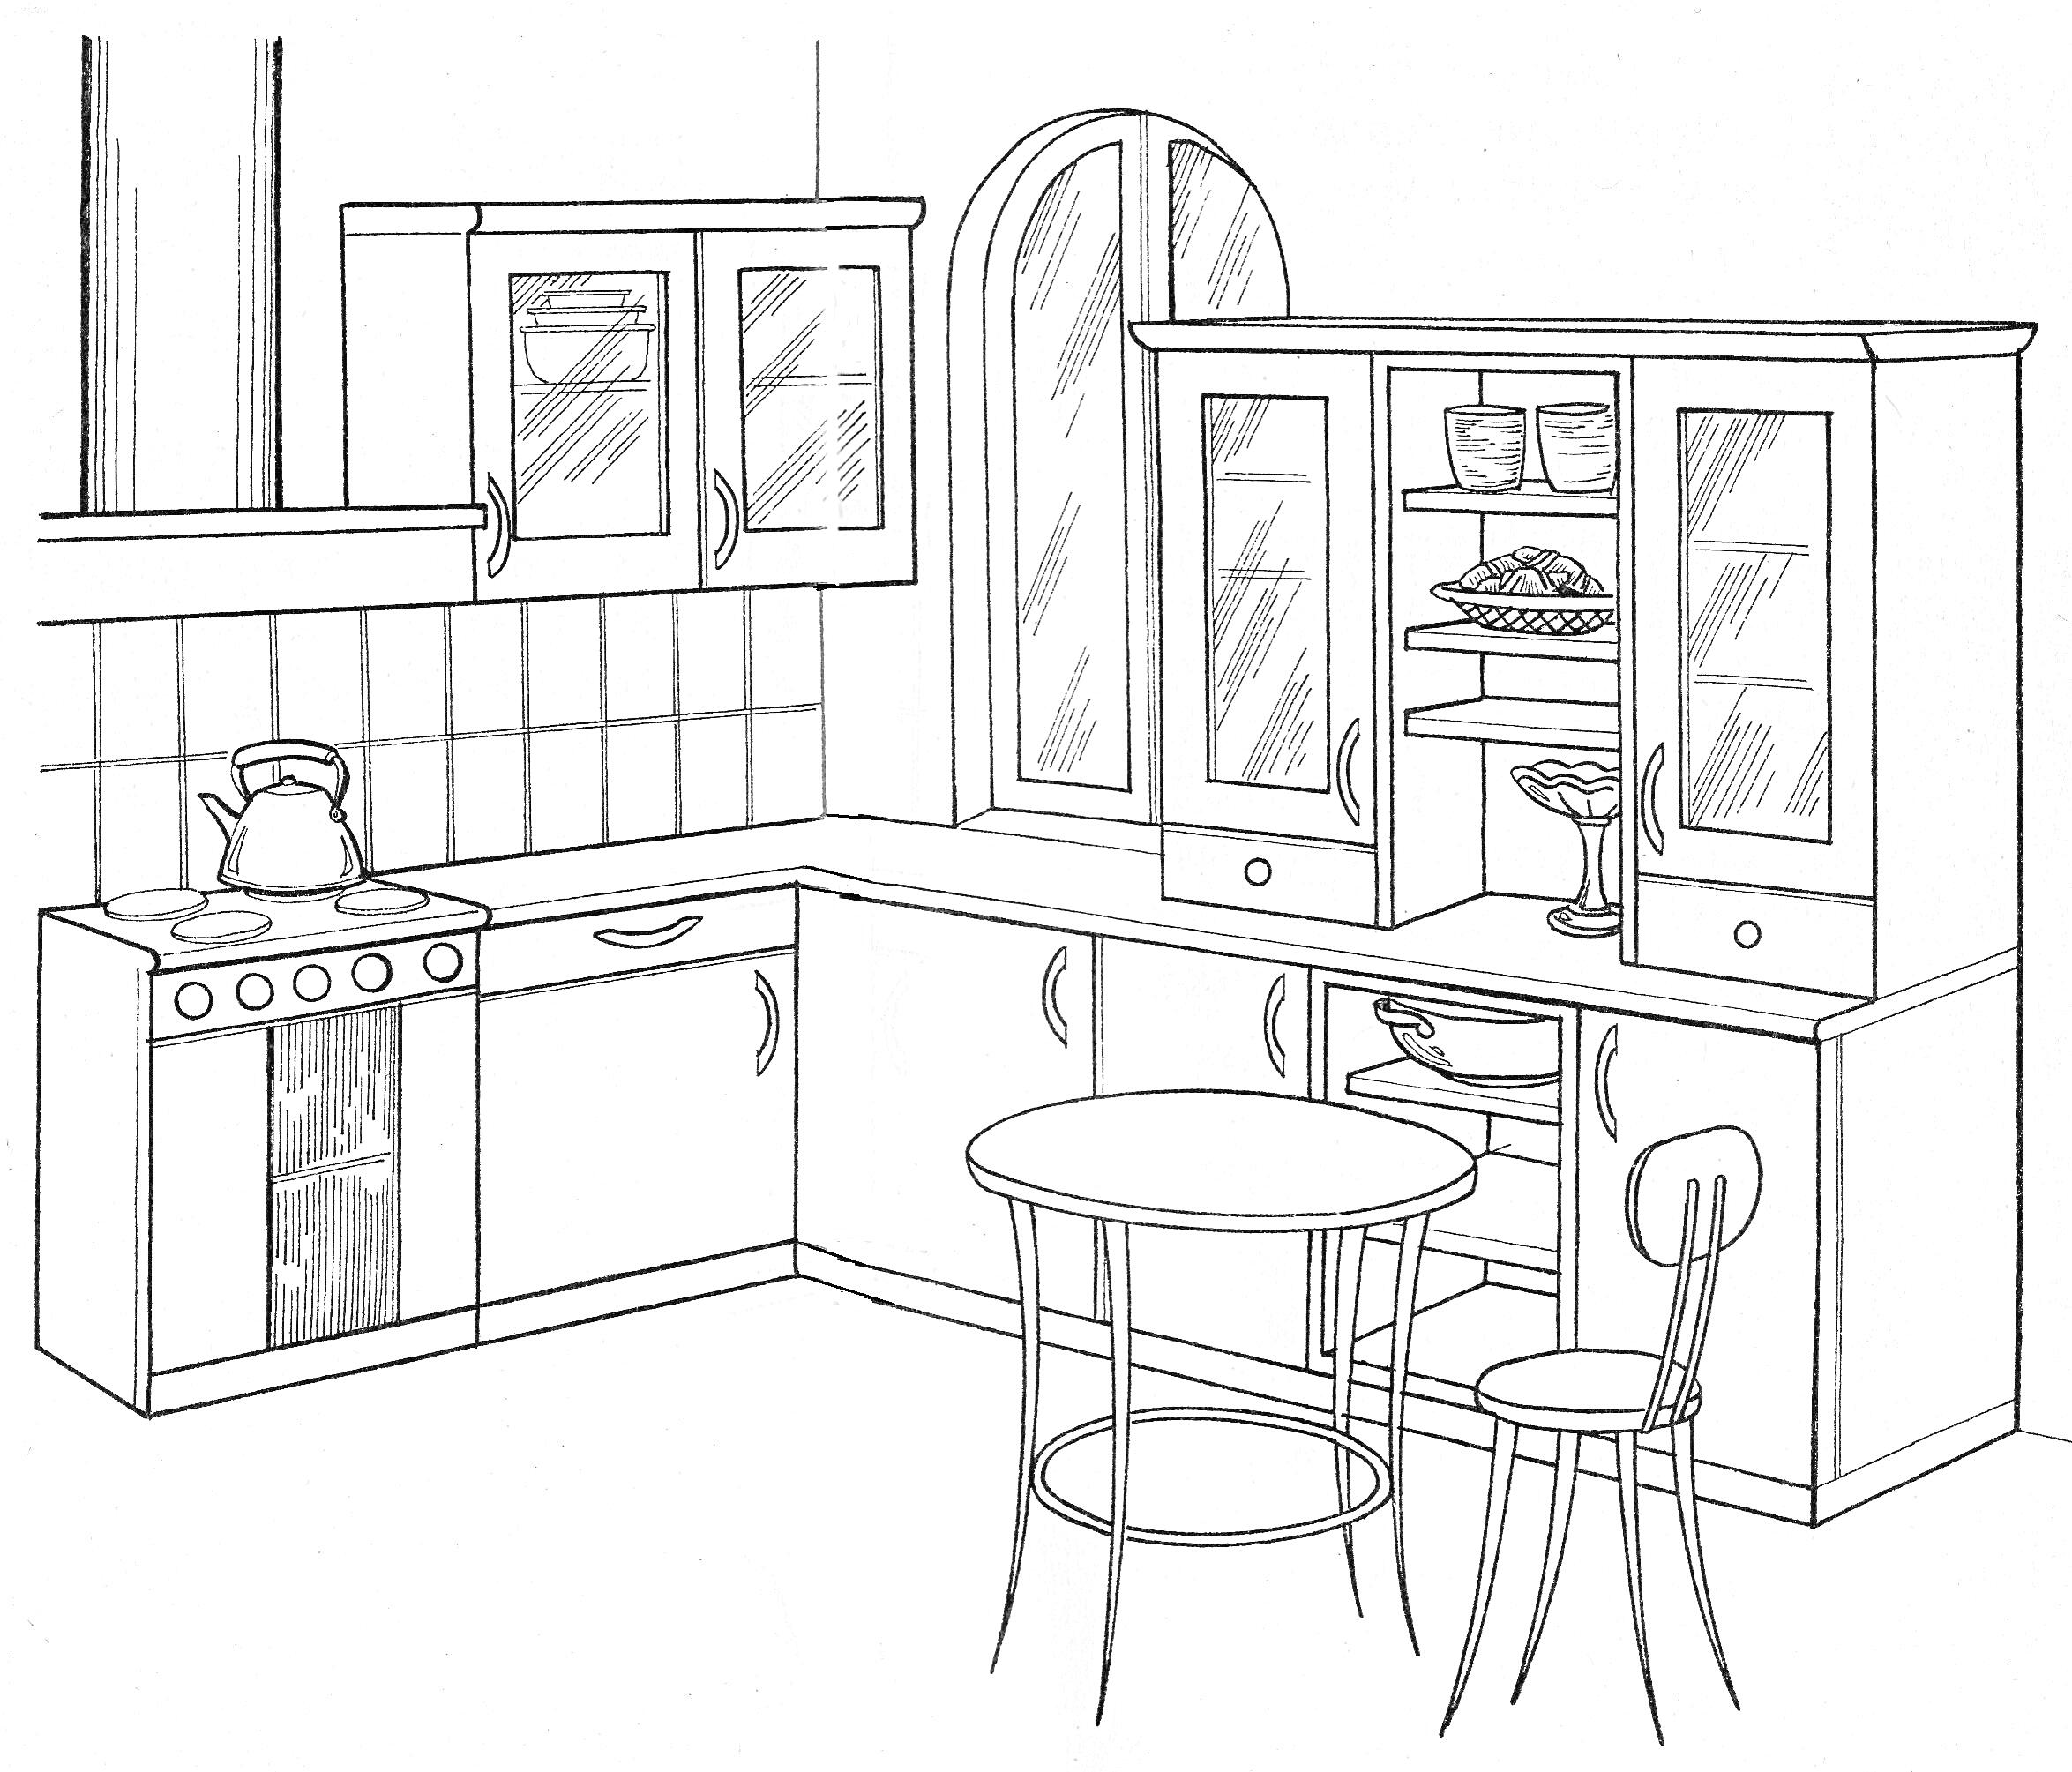 Раскраска Кухня с газовой плитой, чайником, навесными шкафами, кухонным столом, стулом, шкафом с посудой, тарелками, бокалами и окном